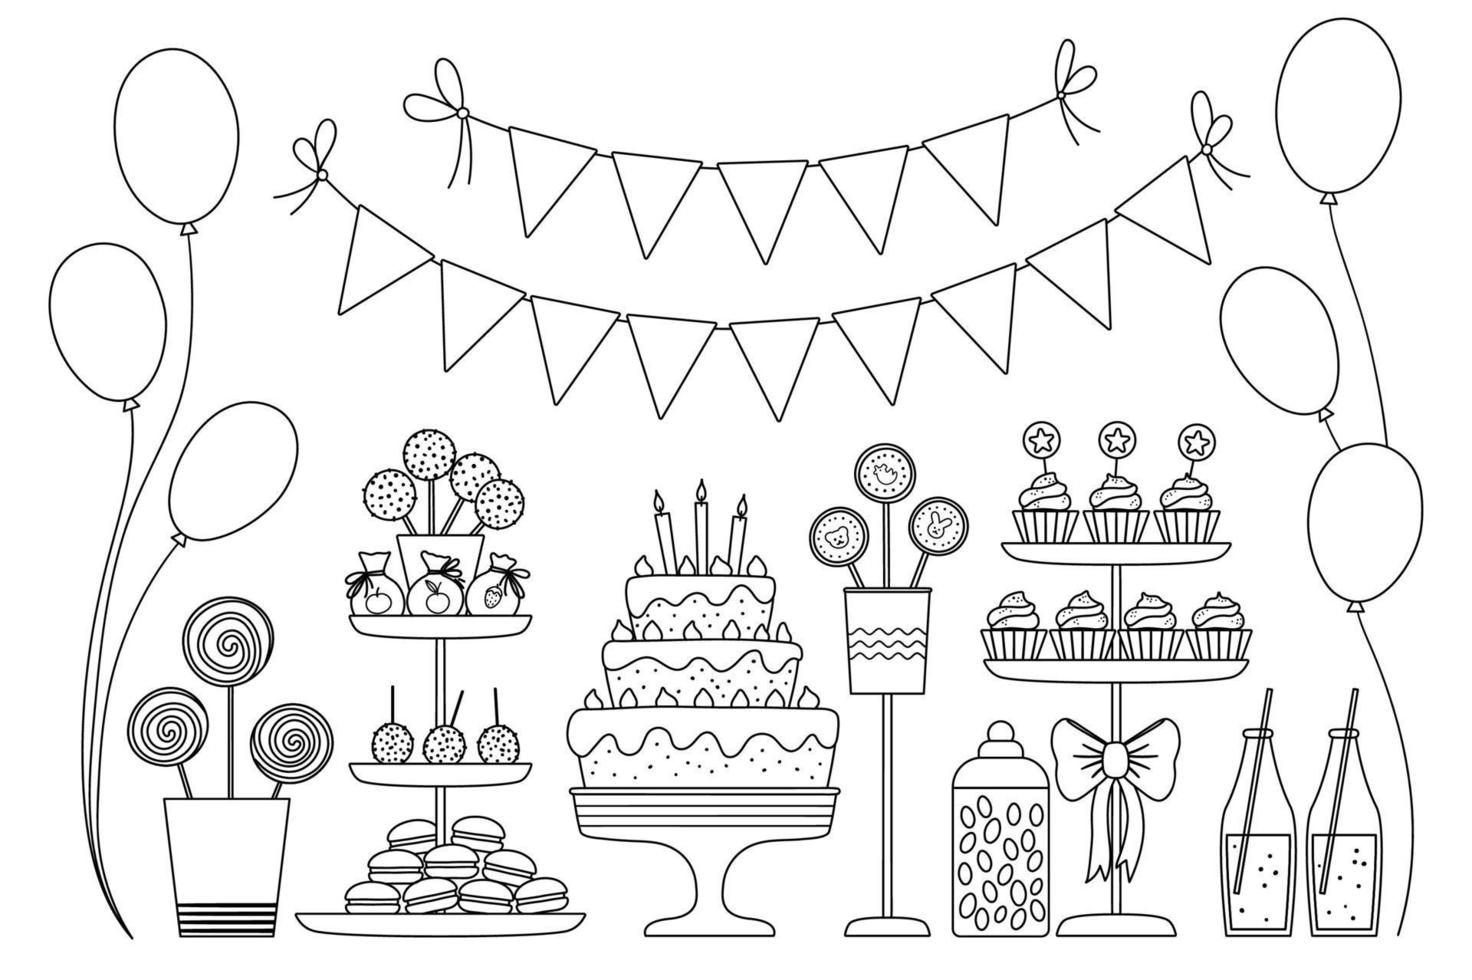 vektor svart och vit godisbar. söt kontur födelsedagsmåltid med tårta, ljus, cupcakes, cake pops, gelébönor, flaggor. rolig dessert illustration för kort, affisch, print design. semester linje ikoner.